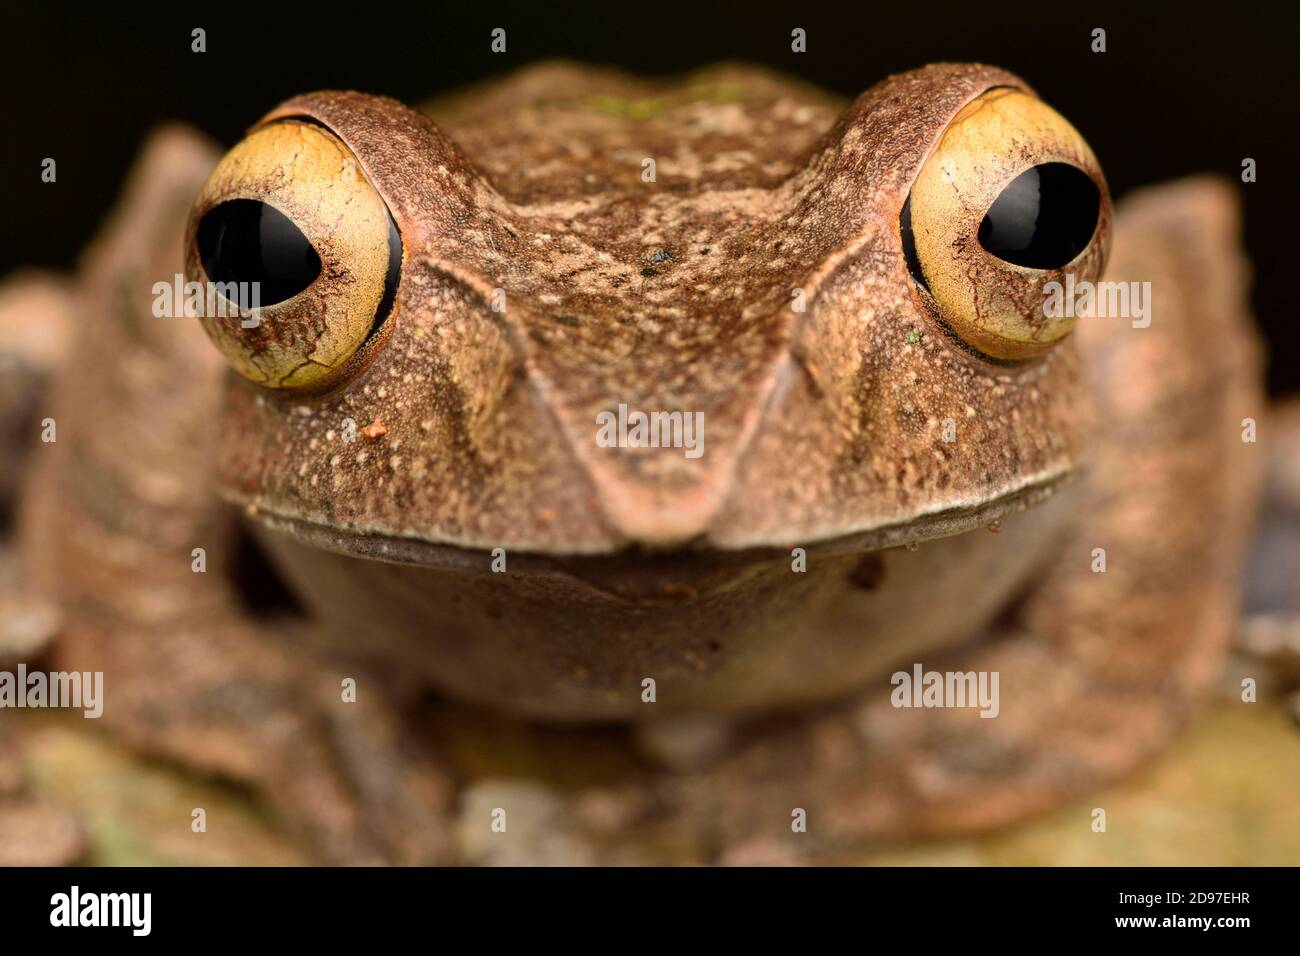 Madagascar Bright-eyed Frog (Boophis madagascariensis) portrait, Andasibe, Madagascar Stock Photo